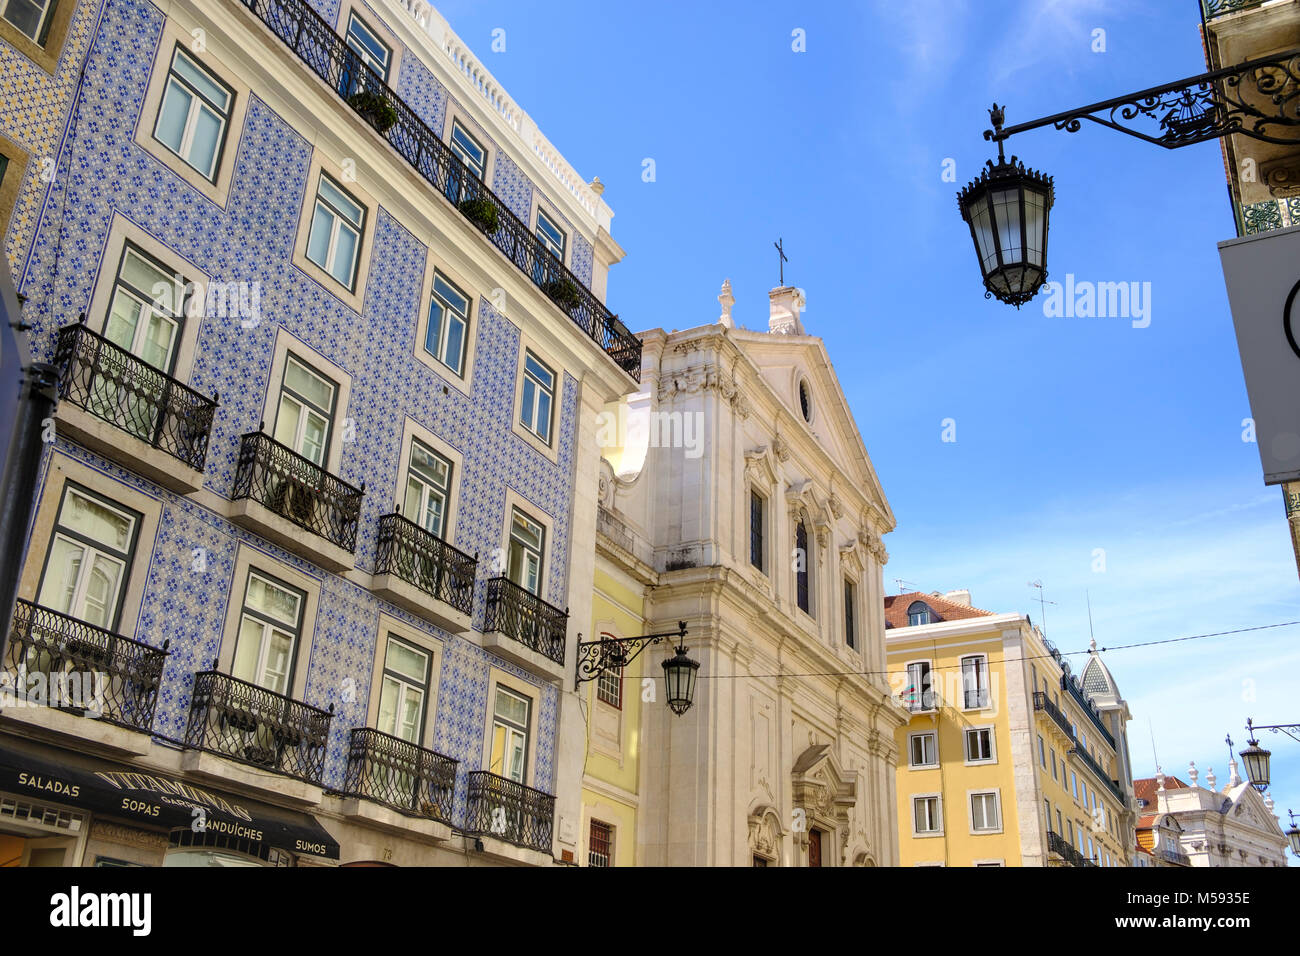 Arquitectura y calles de barrio de Chiado, Lisboa, Portugal Foto de stock